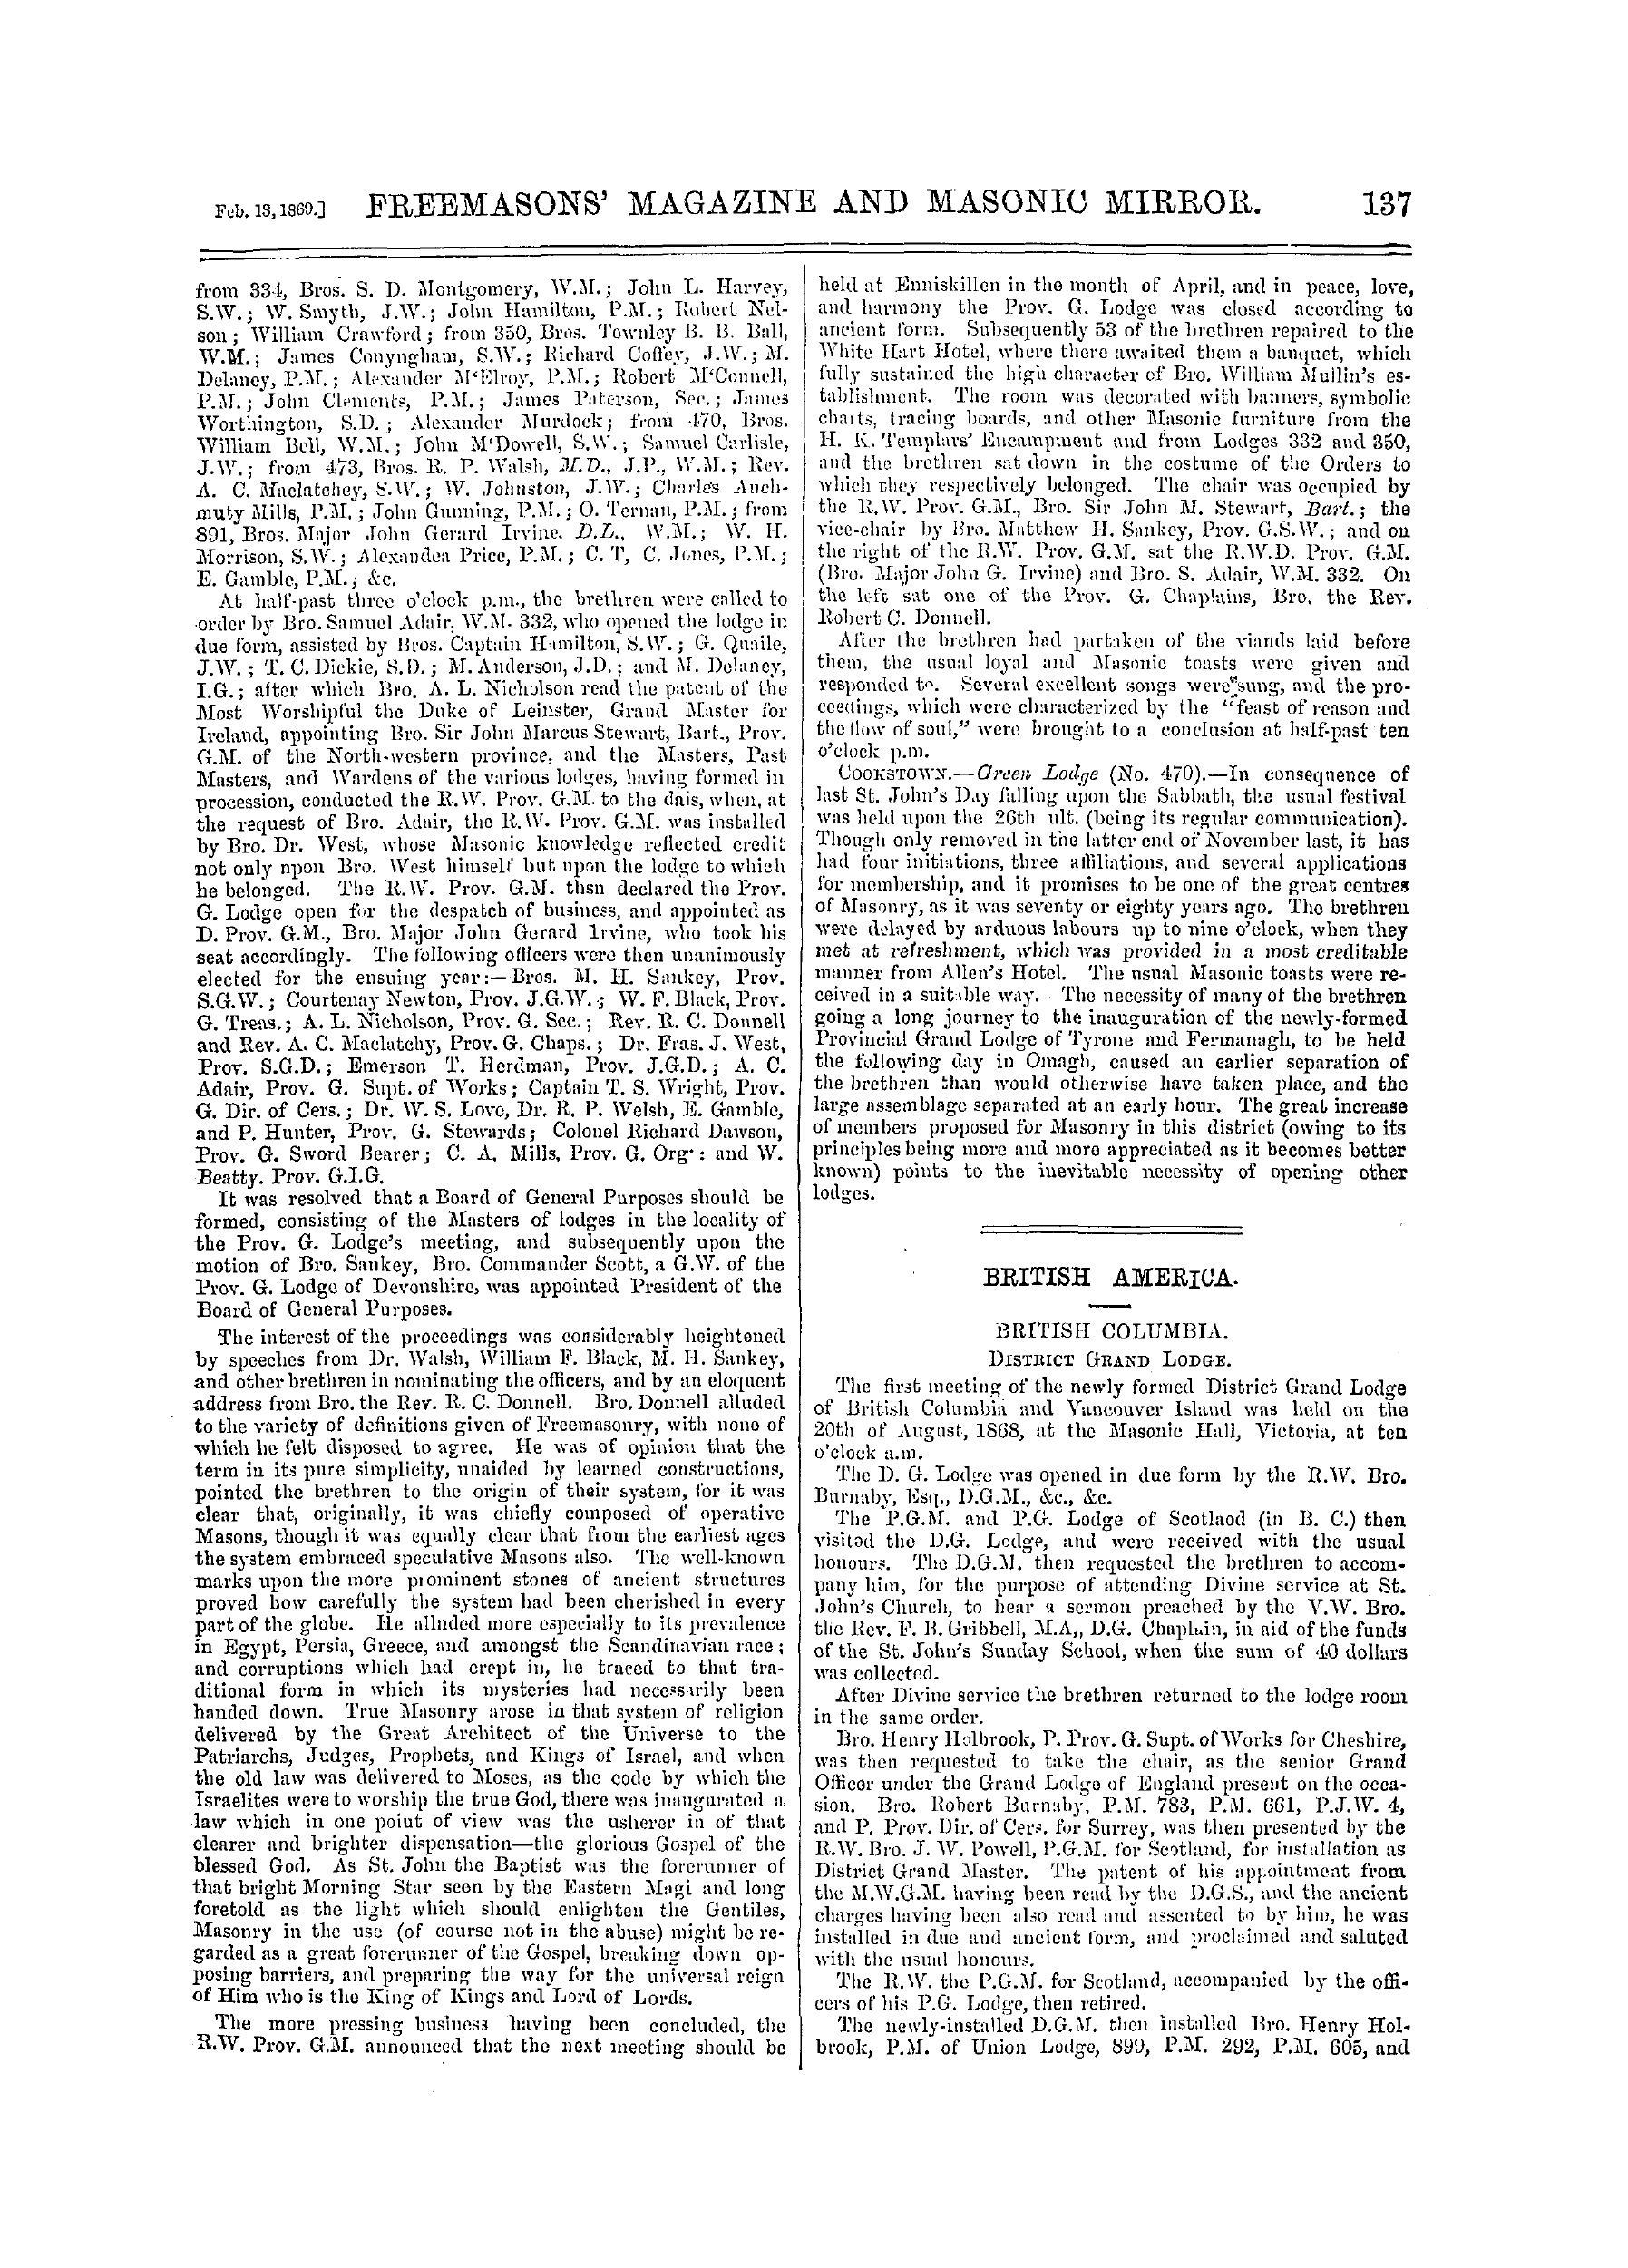 The Freemasons' Monthly Magazine: 1869-02-13: 17